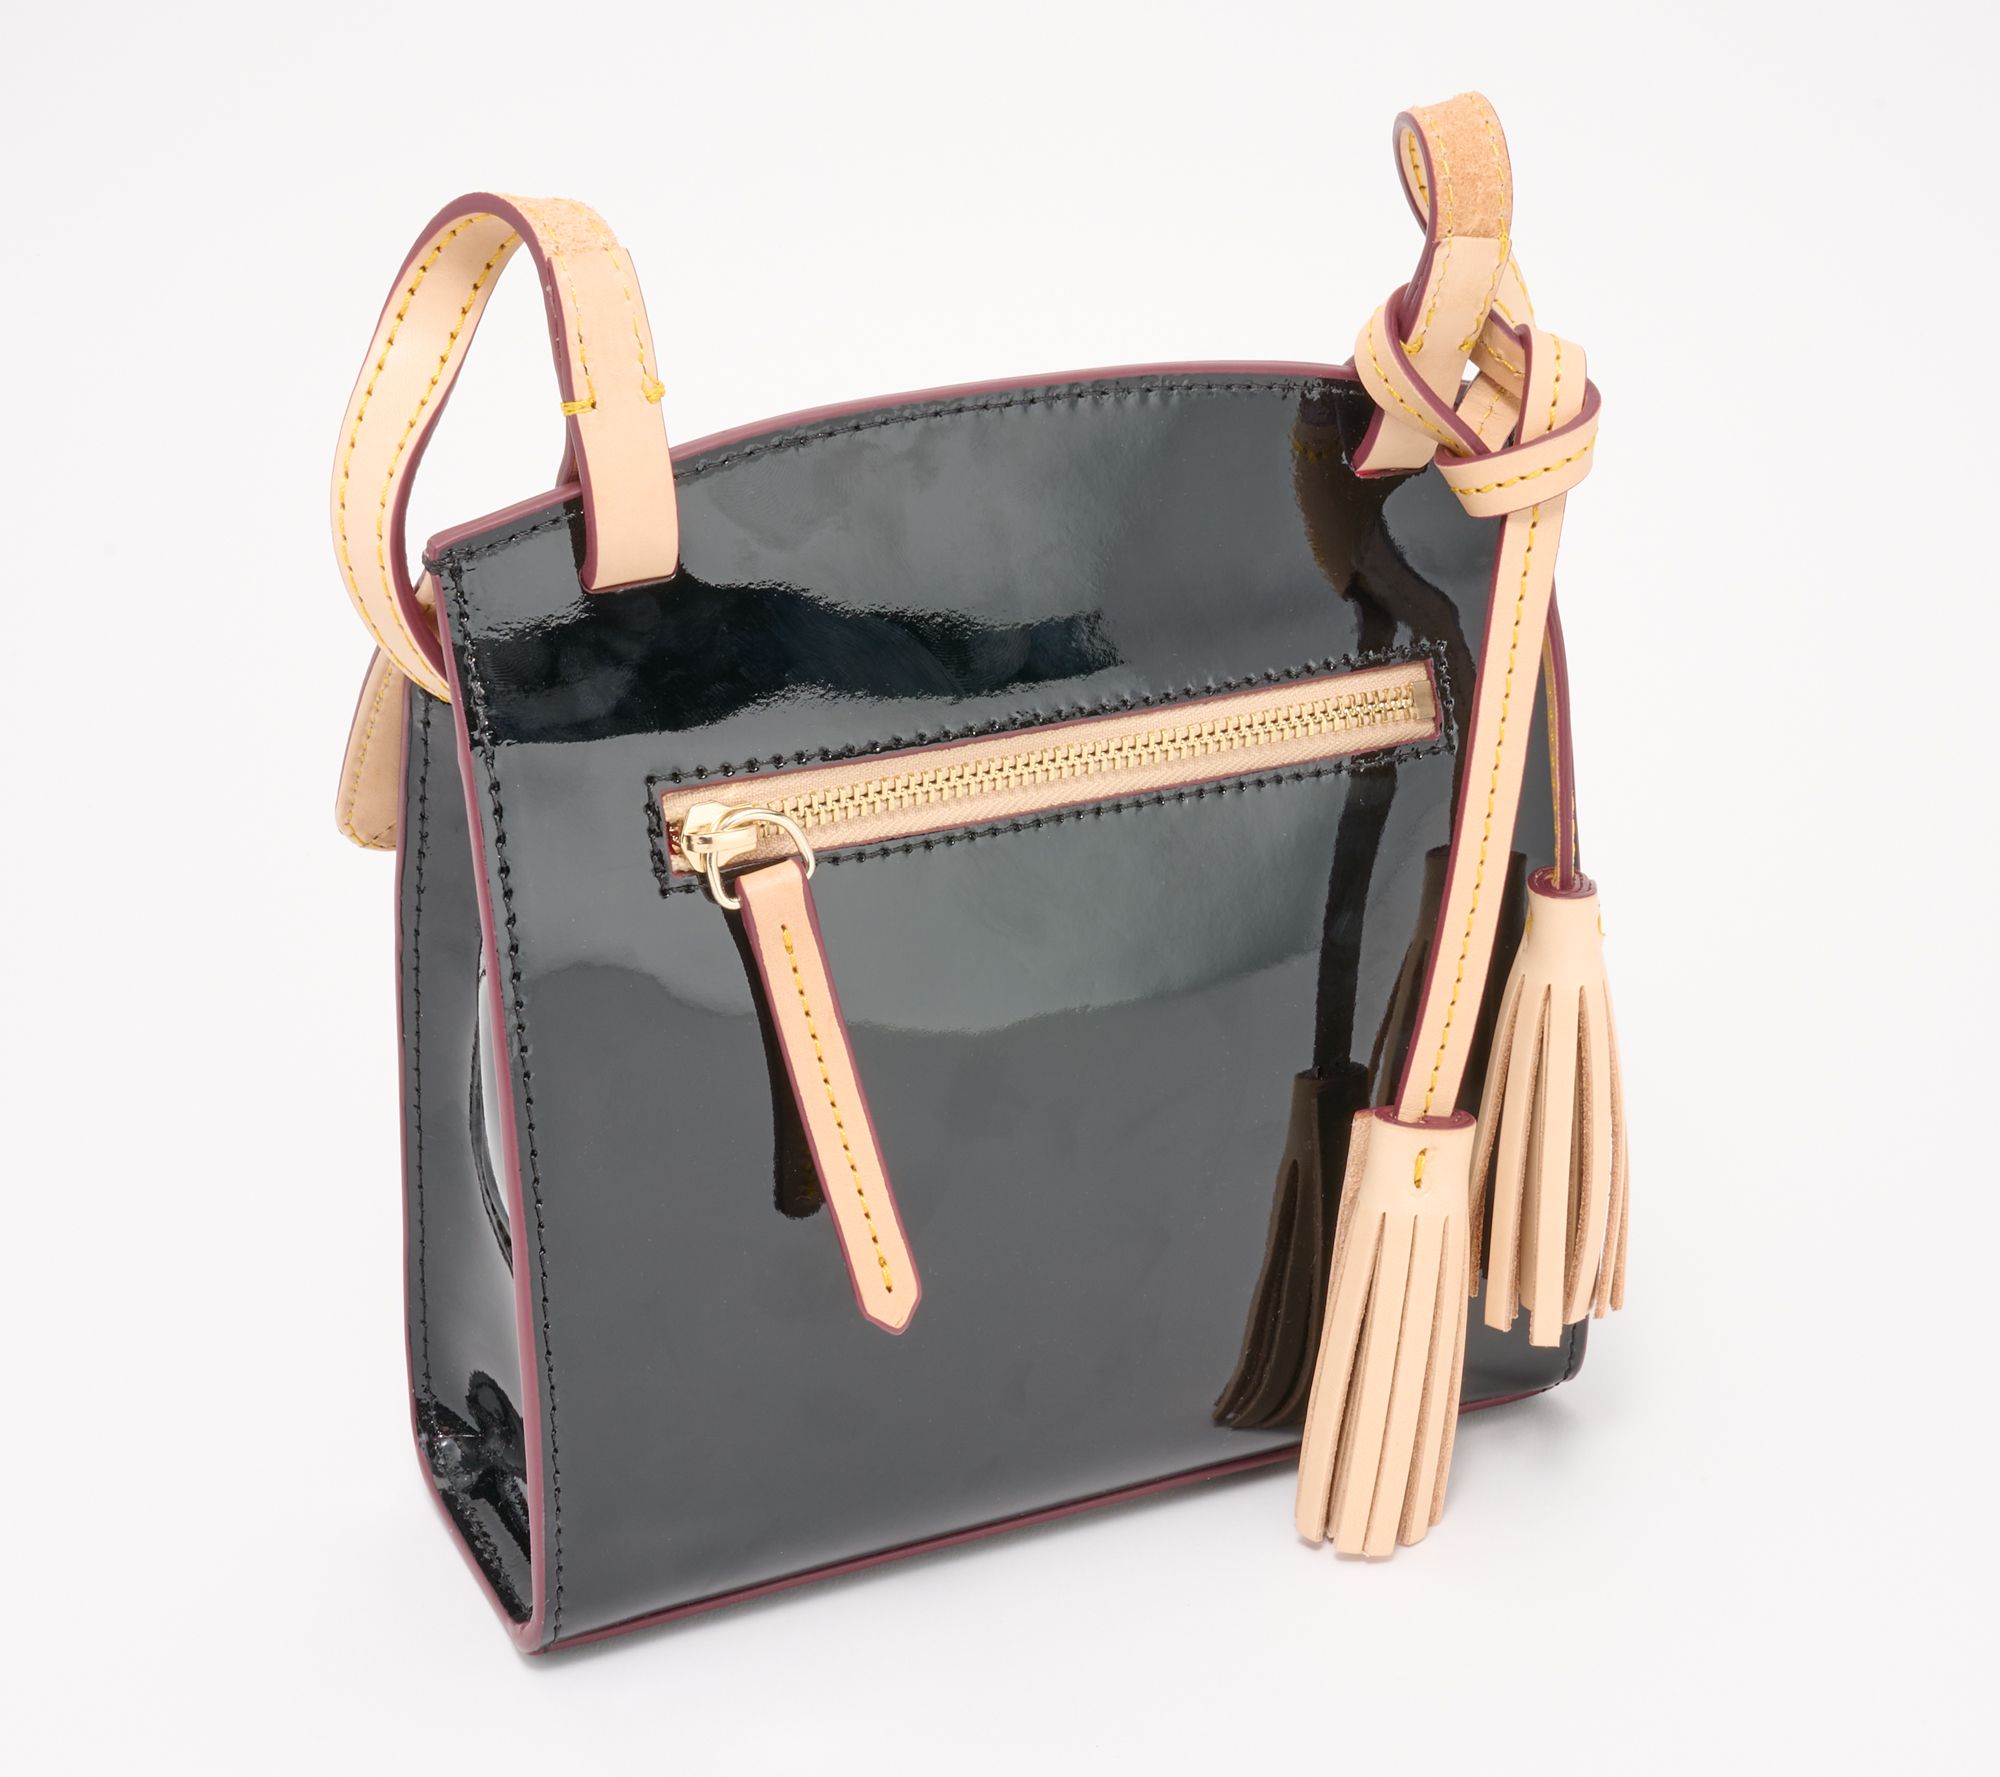 NEW Dooney & Bourke Dark Pink Taupe Logo Tackle Shoulder Bag Purse  Handbag QVC